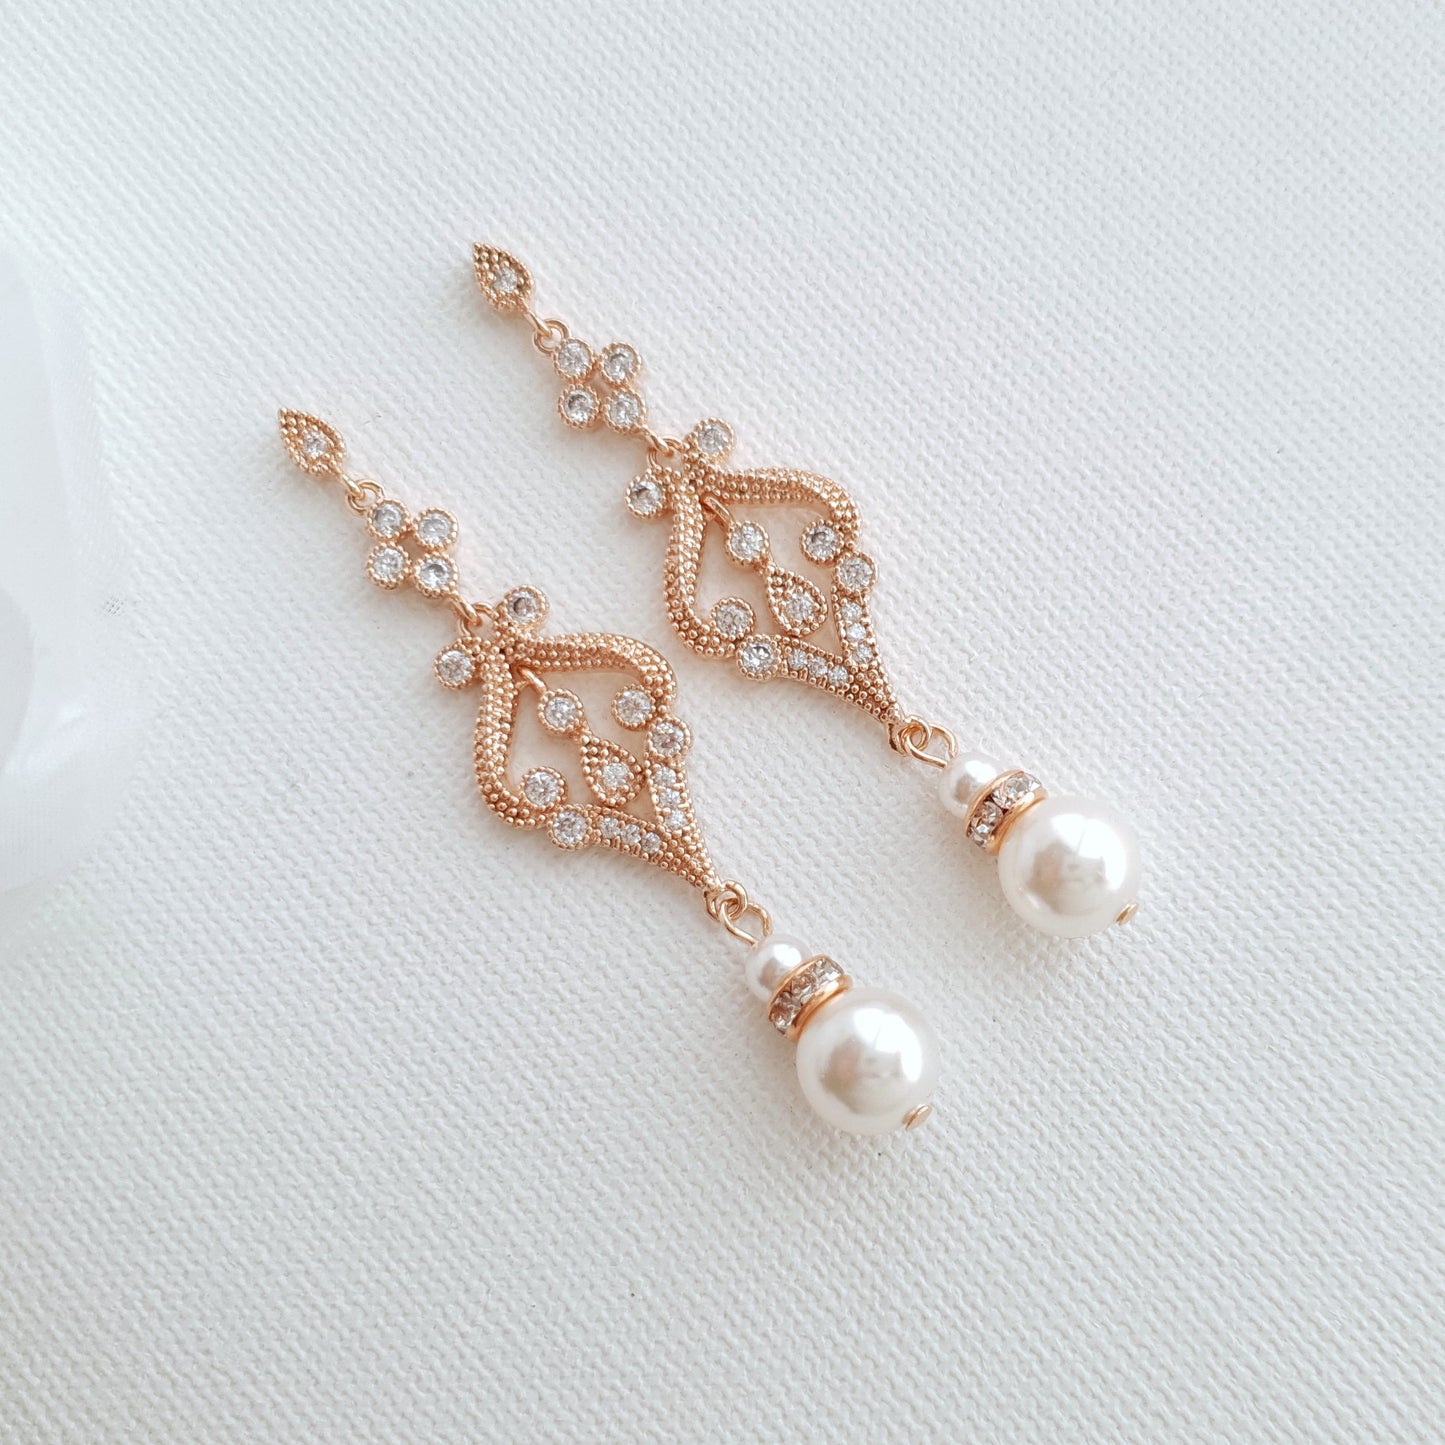 Vintage Pearl Wedding Earrings with round pearls- Poetry Designs